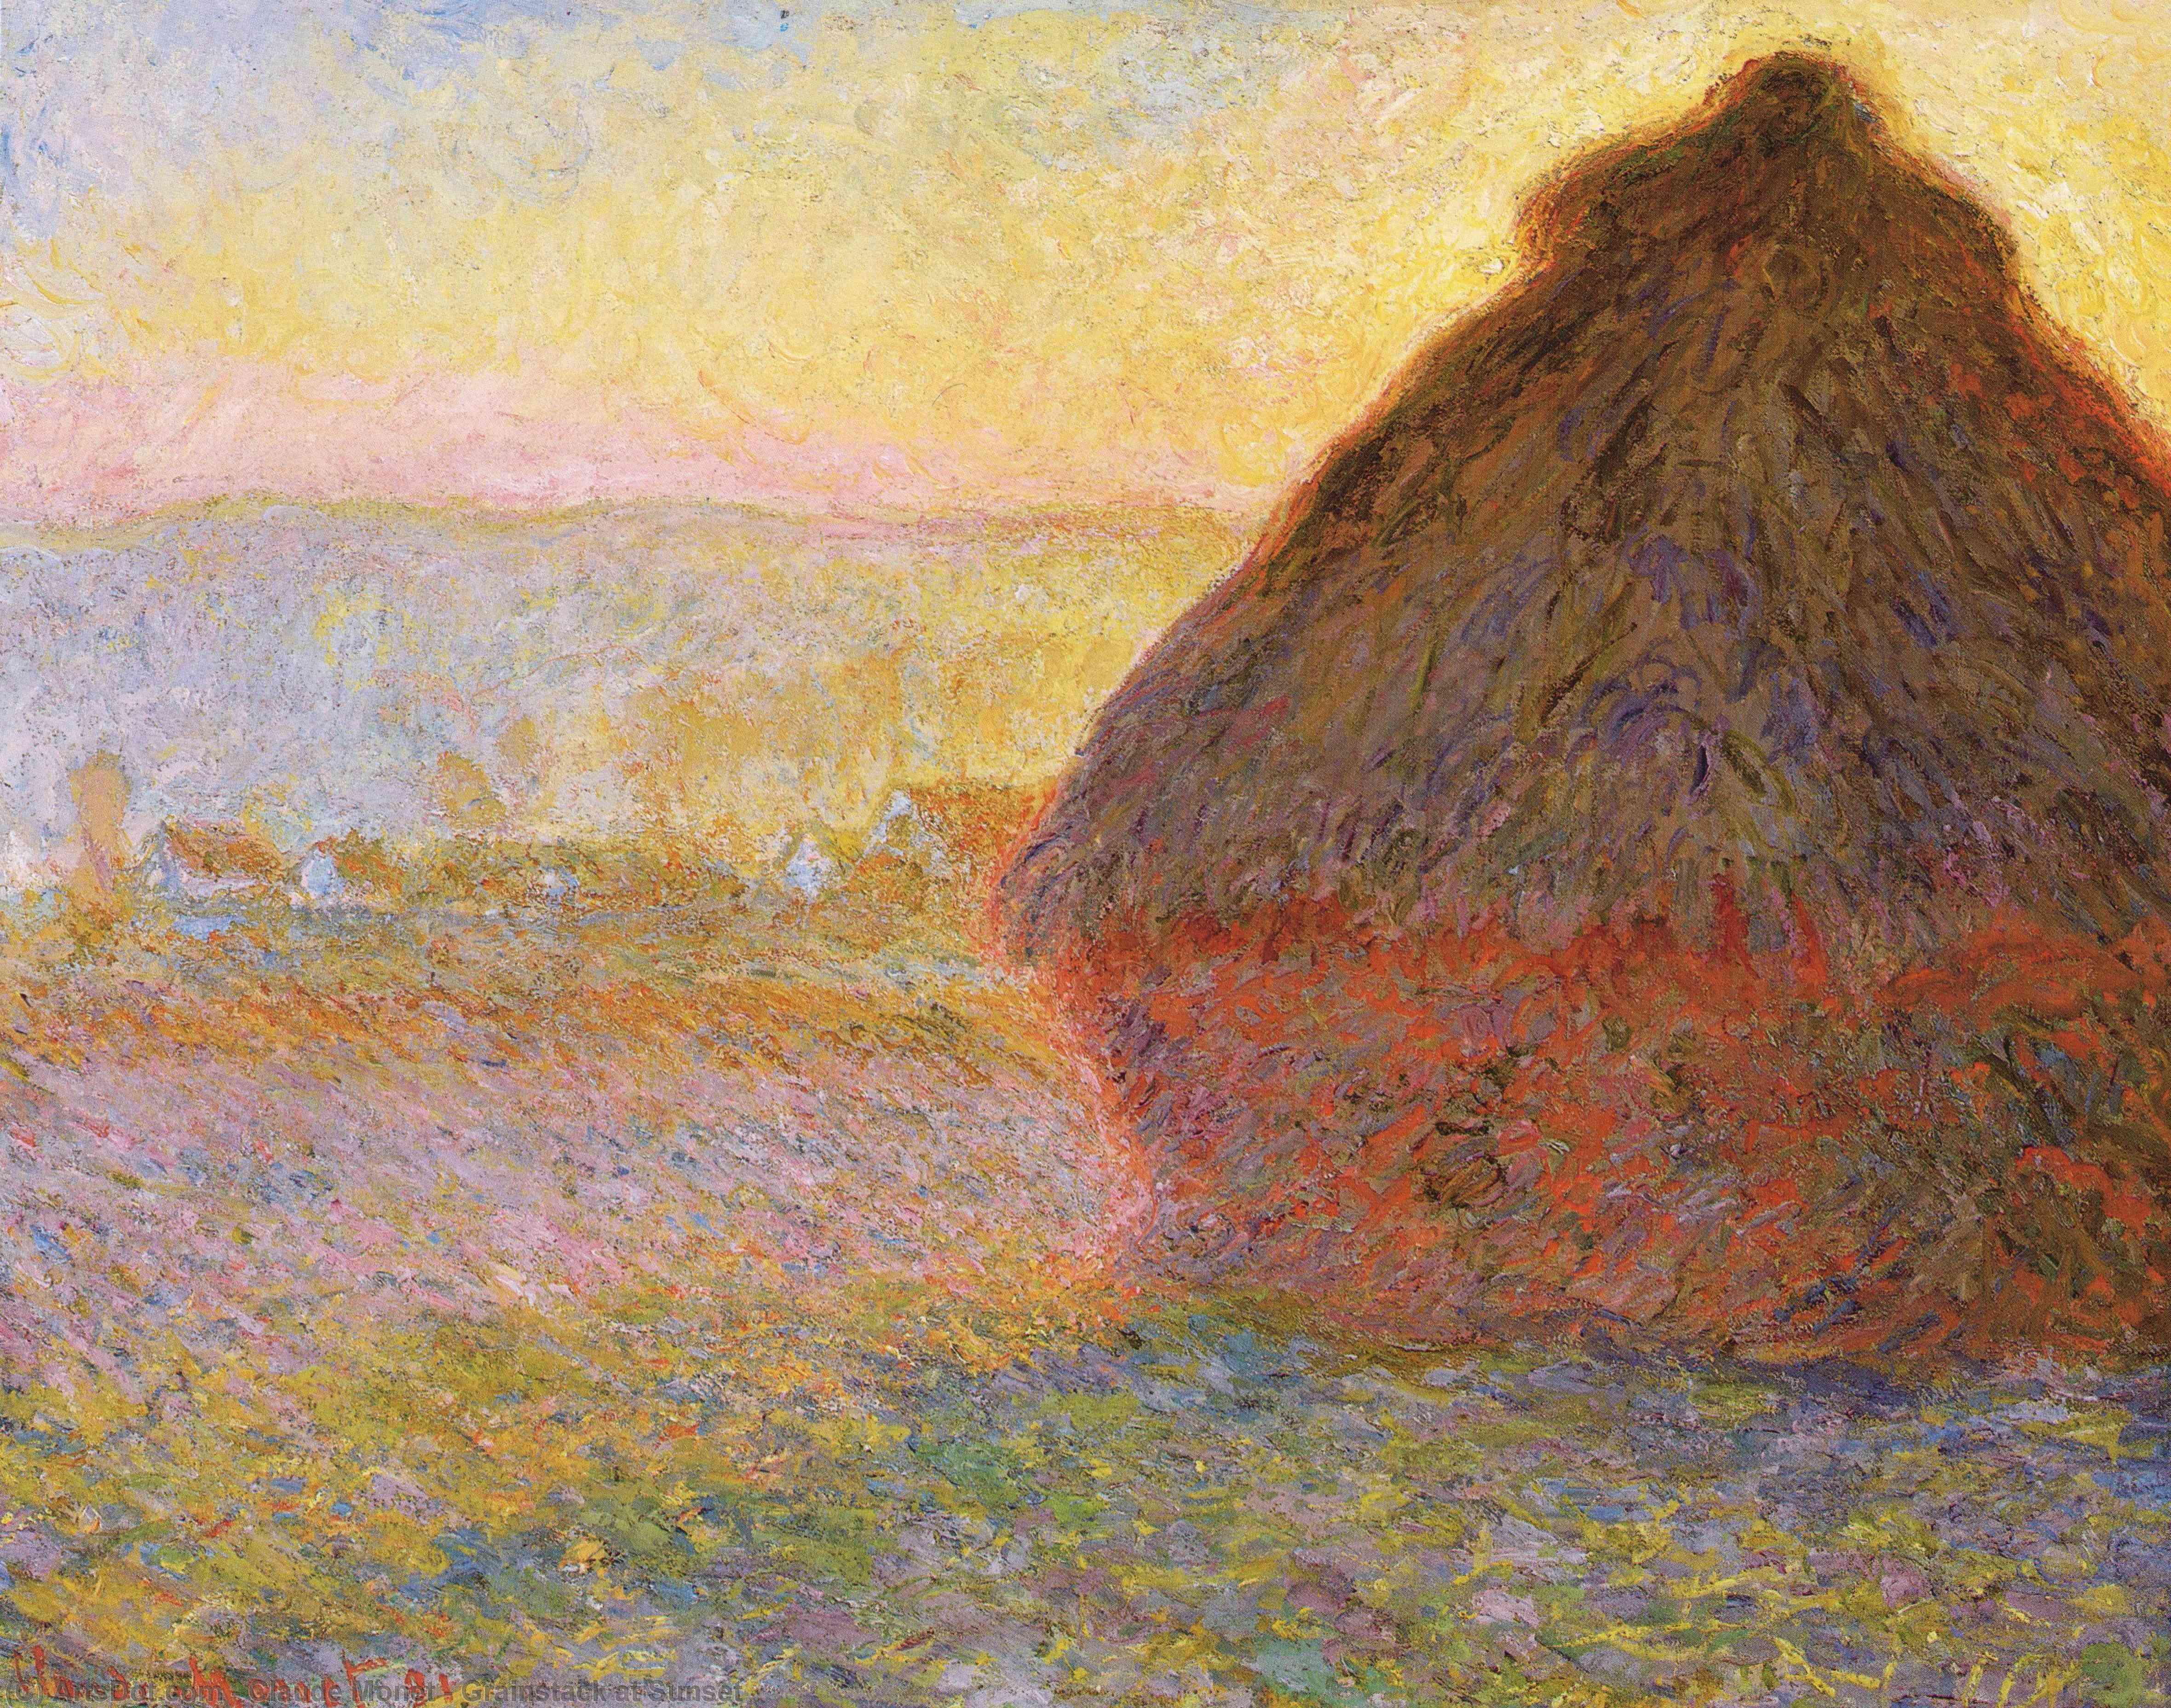 WikiOO.org - Енциклопедия за изящни изкуства - Живопис, Произведения на изкуството Claude Monet - Grainstack at Sunset